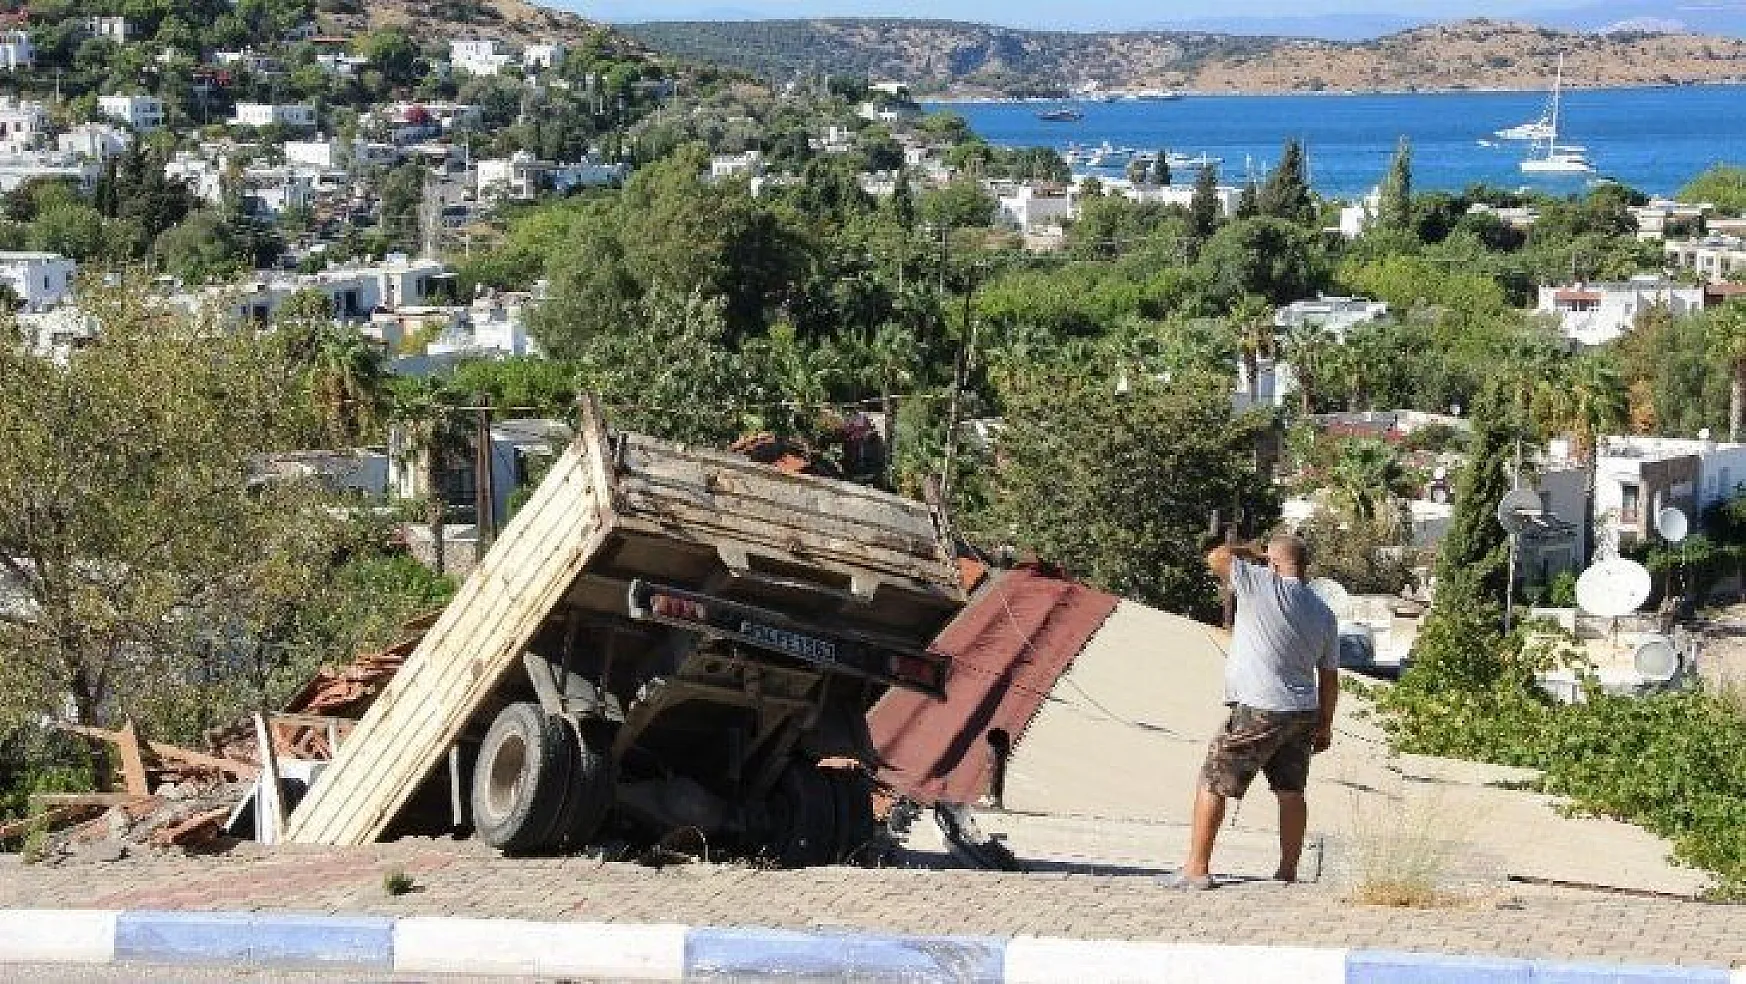 Ev salçası yaparken evinin çatısından içeri kamyon girdi